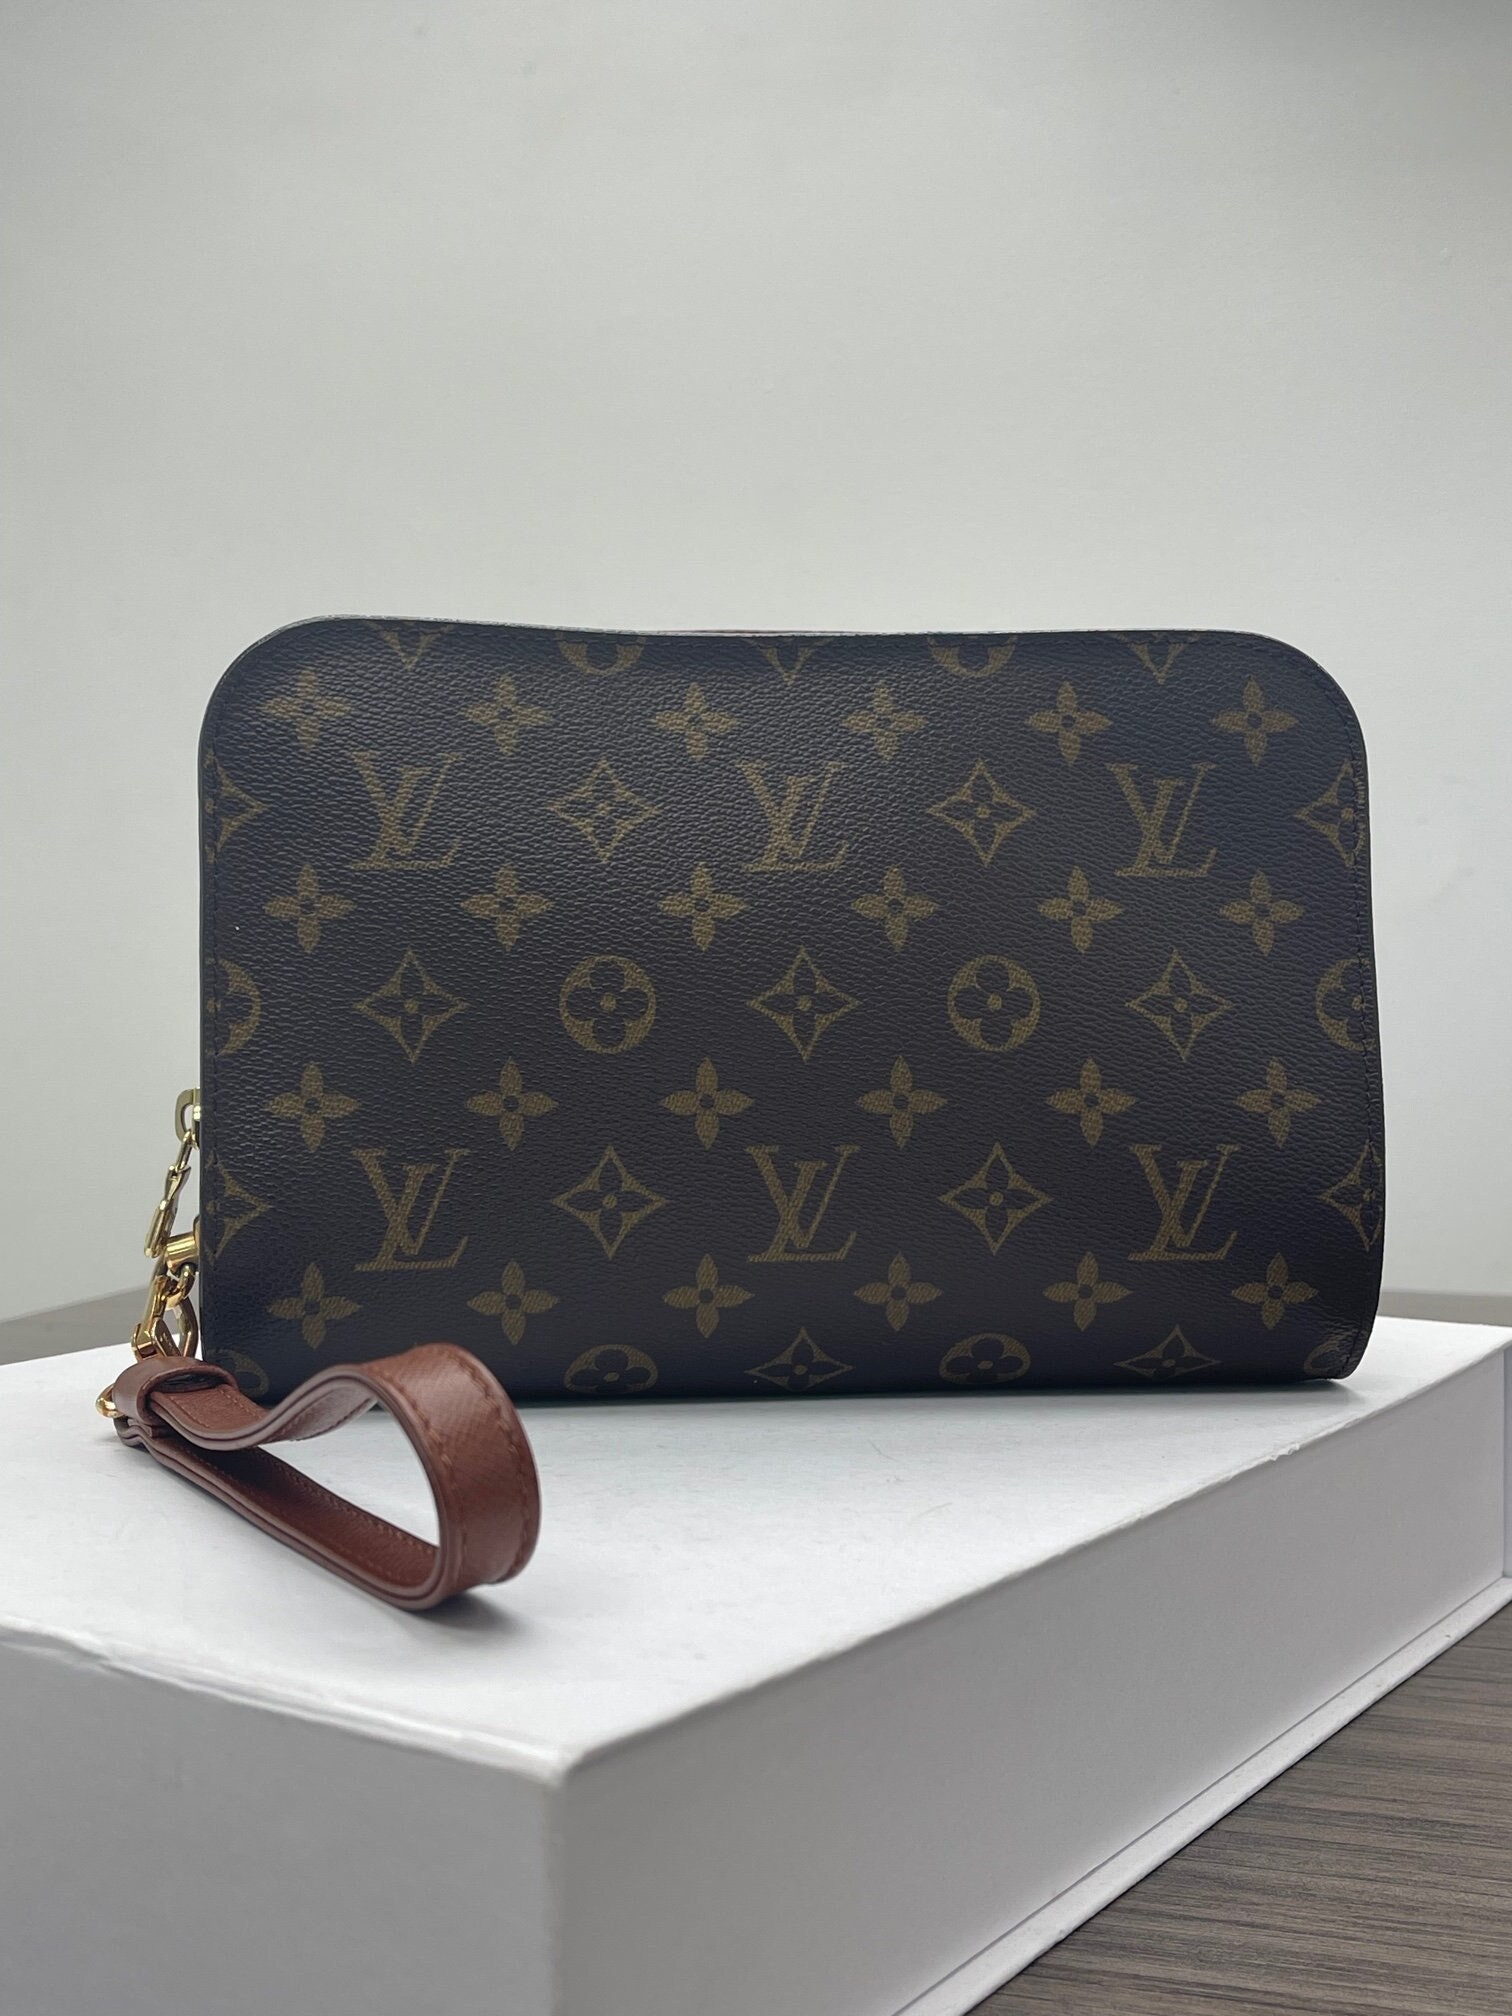 Louis Vuitton Handbags Under 1000 Czech Republic, SAVE 60